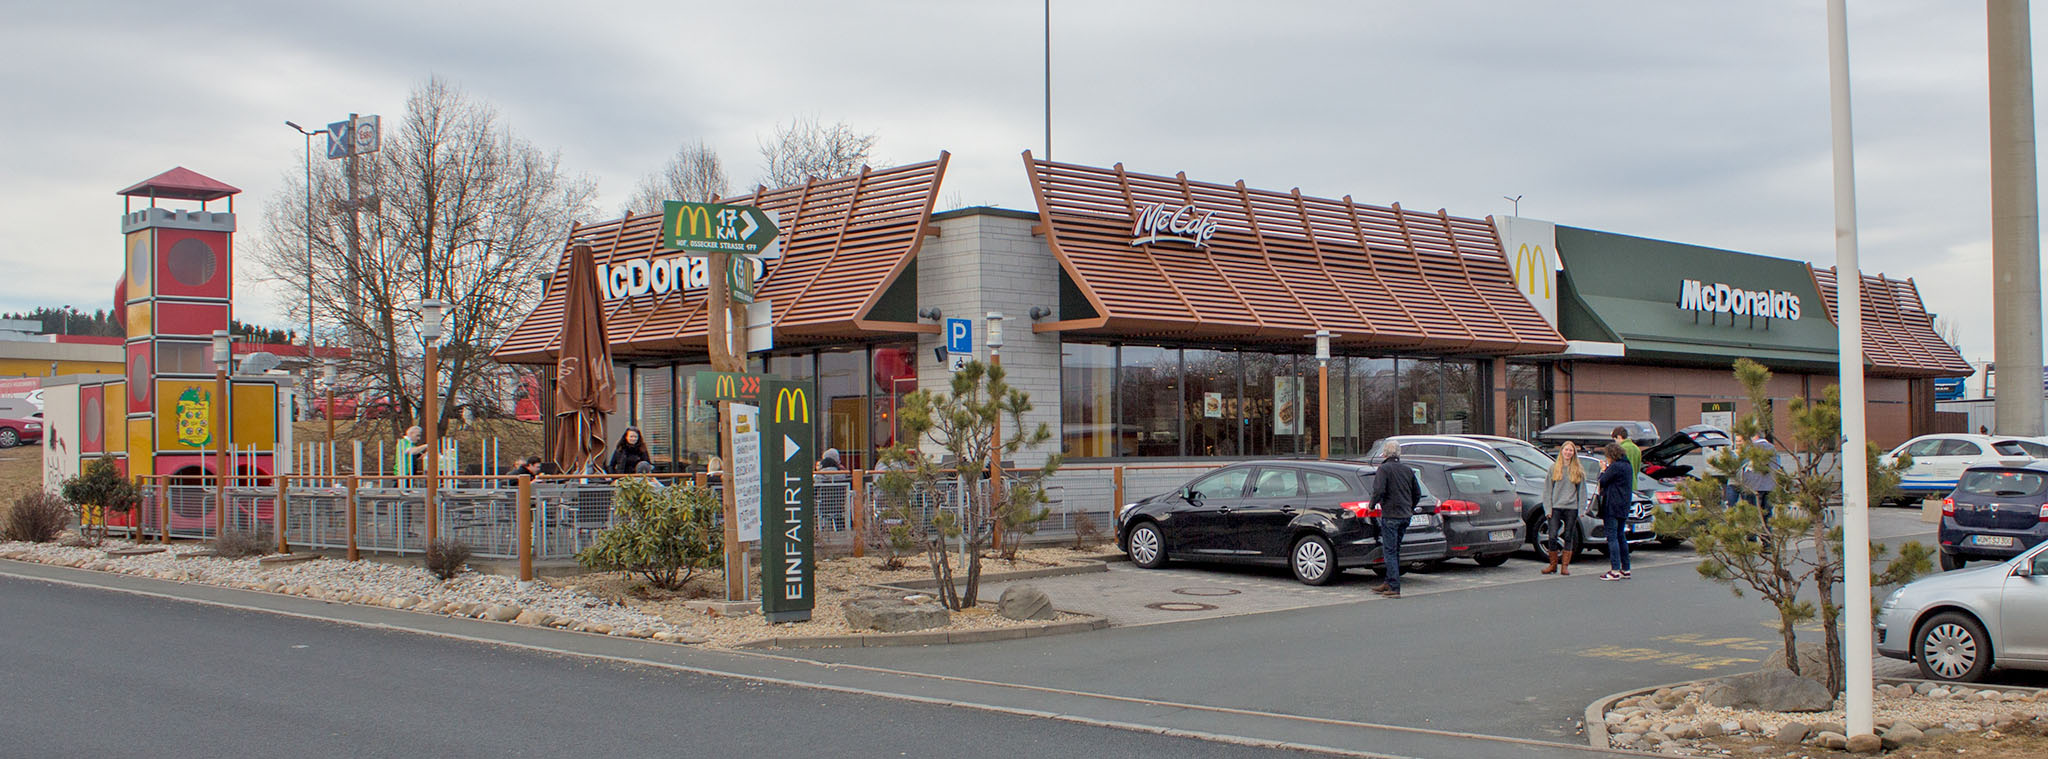 Das McDonald’s-Restaurant in Münchberg